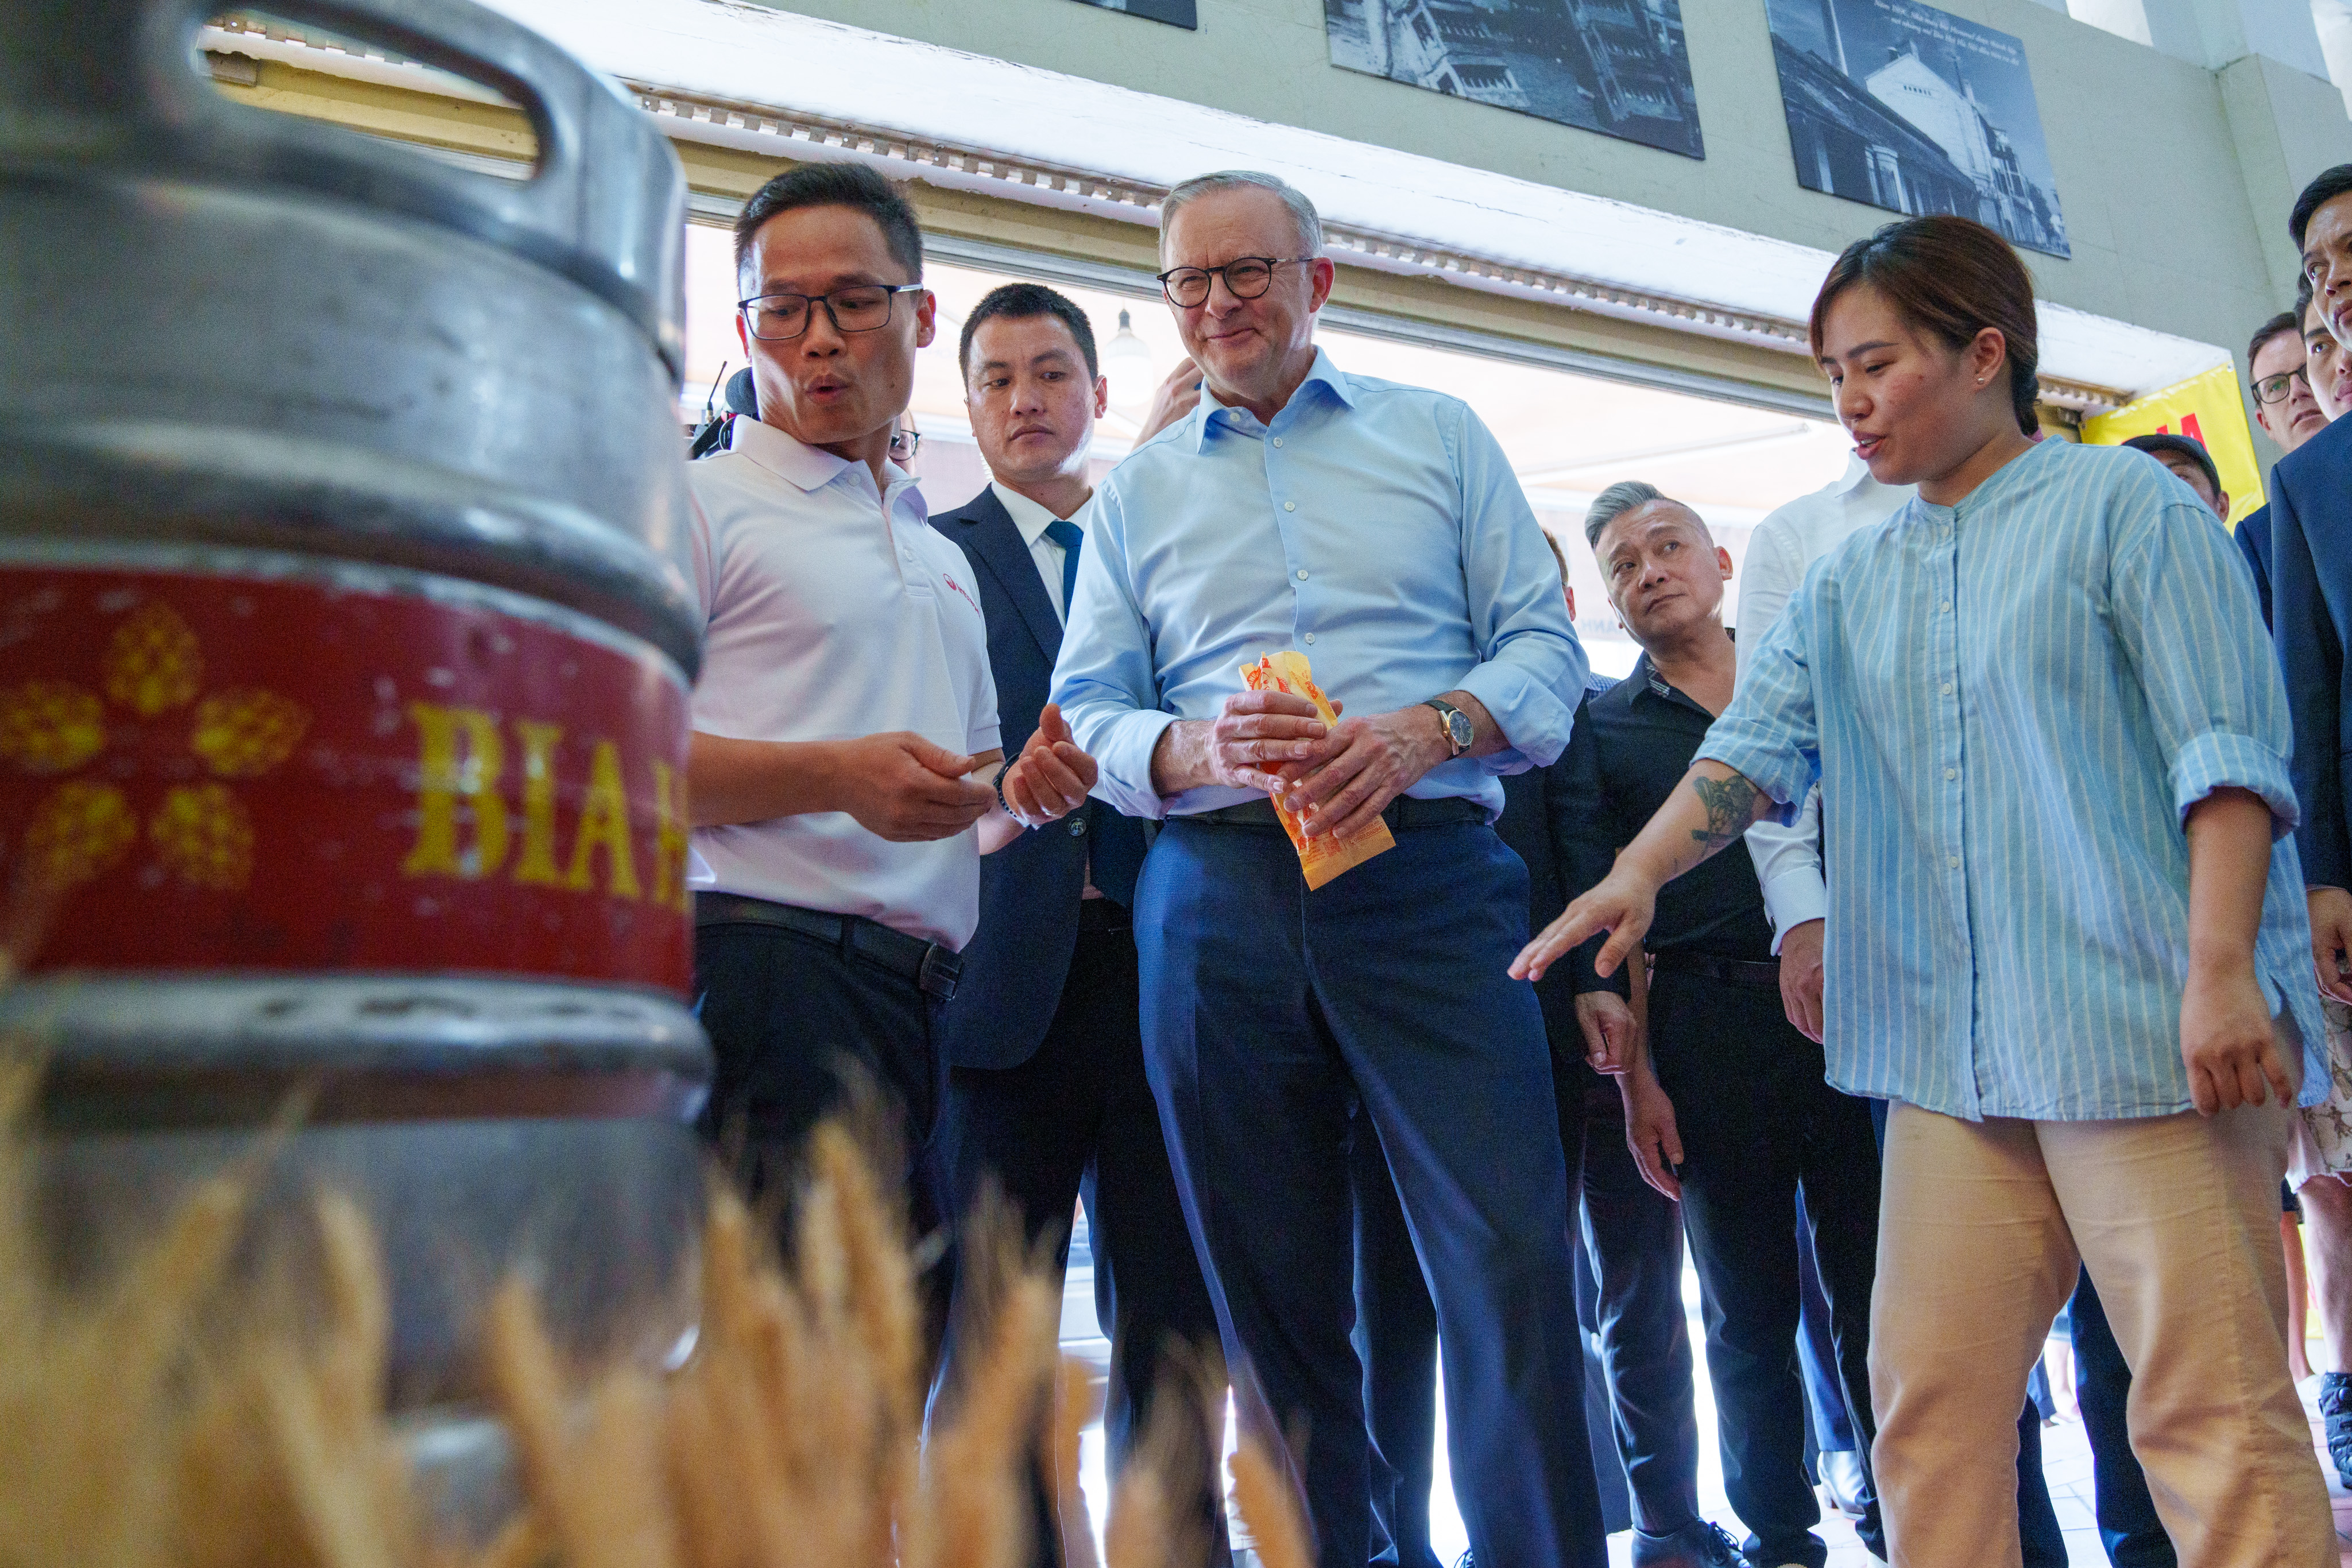 Thủ tướng Australia Anthony Albanese thưởng thức bia hơi và bánh mì trên đường phố Hà Nội. (Nguồn ảnh: Lấy từ twitter “Anthony Albanese”)